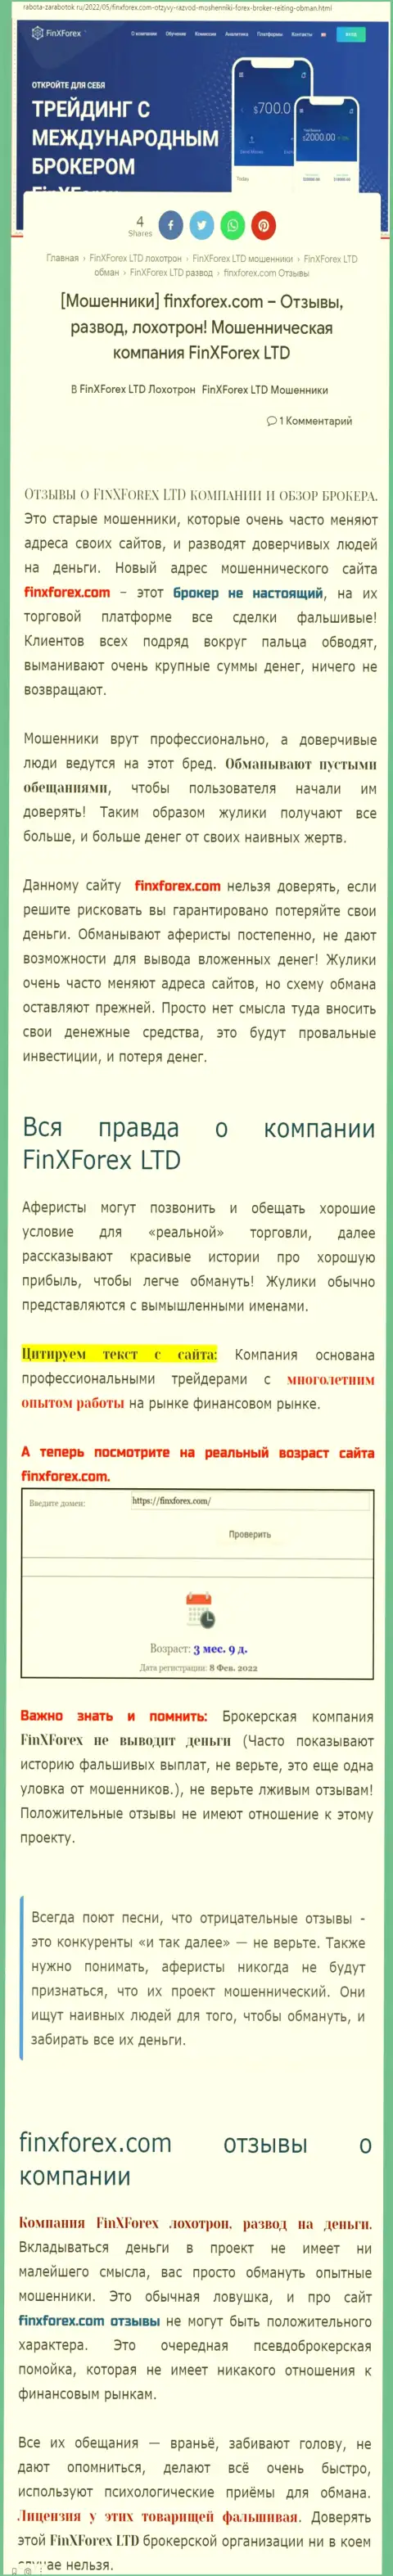 Автор обзора об Fin X Forex предупреждает, что в конторе ФинИксФорекс ЛТД лохотронят